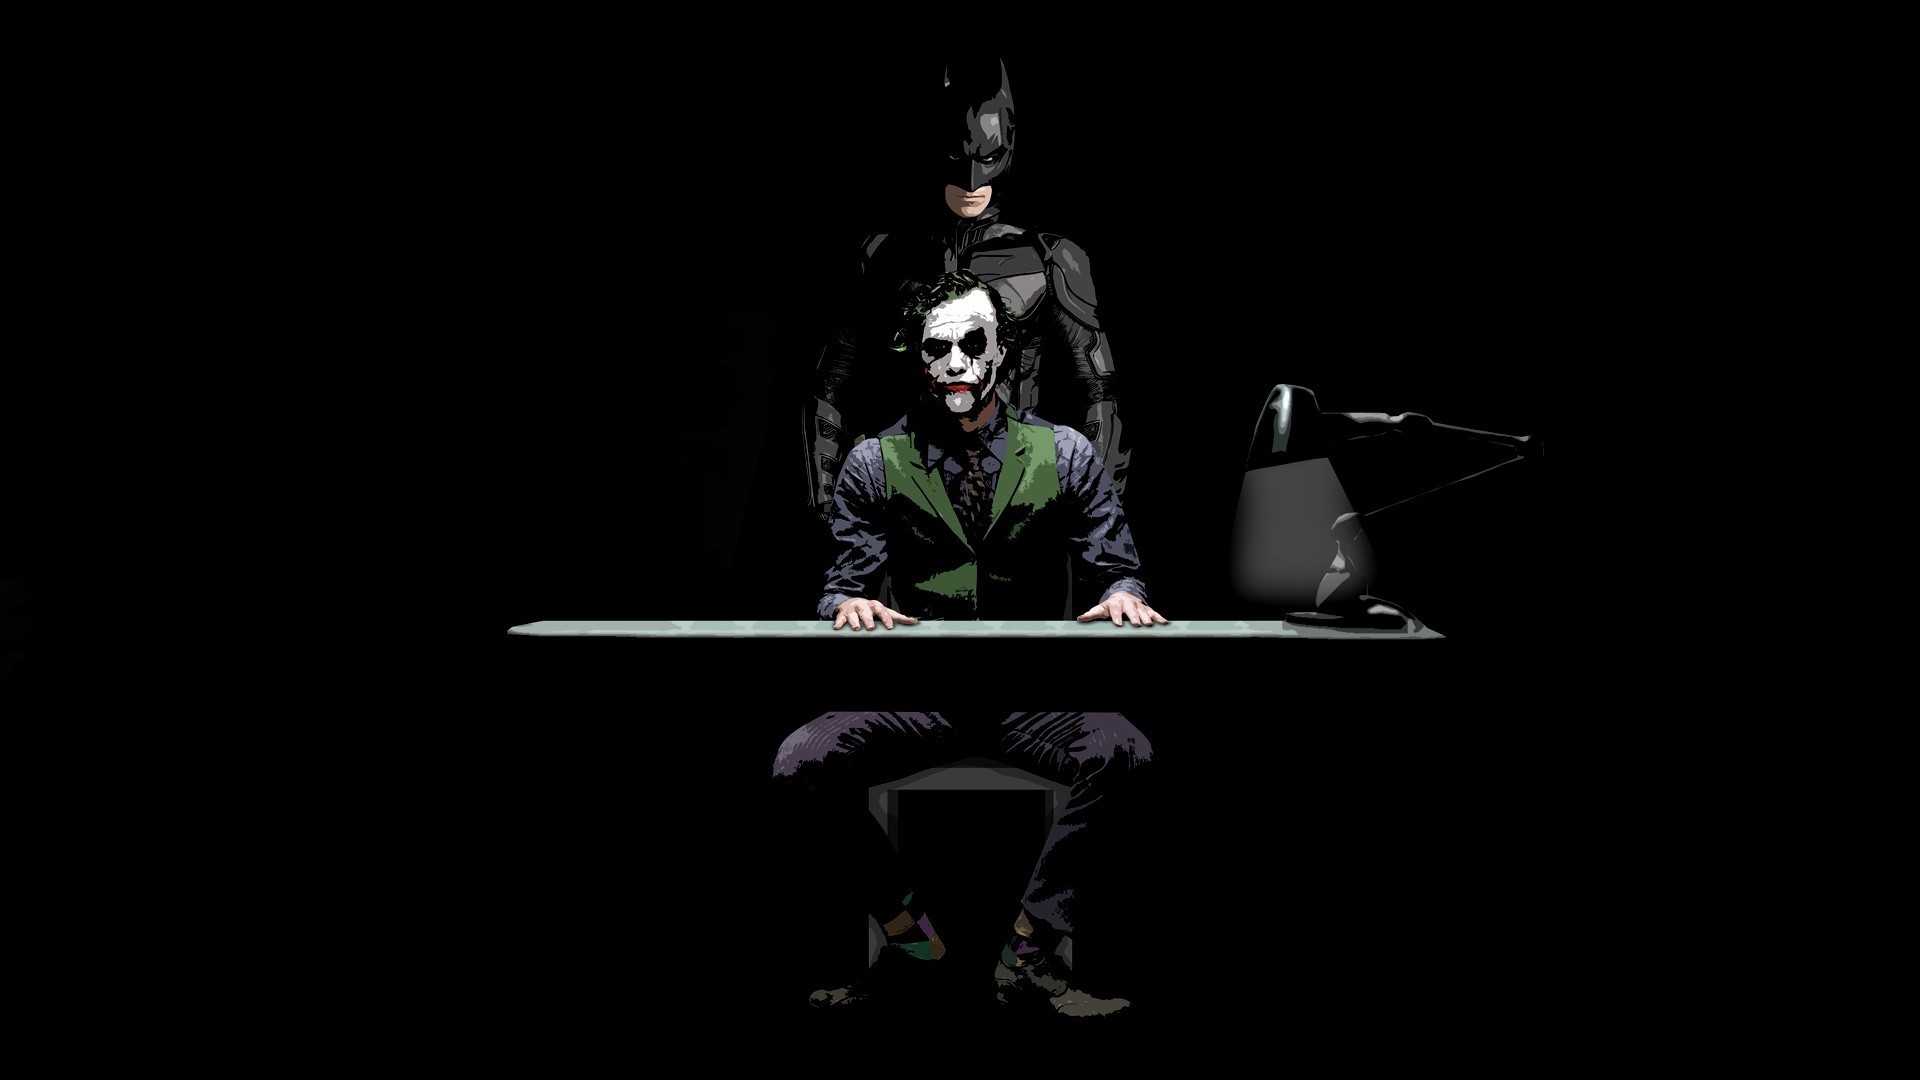 Joker Dark Knight Wallpaper background picture